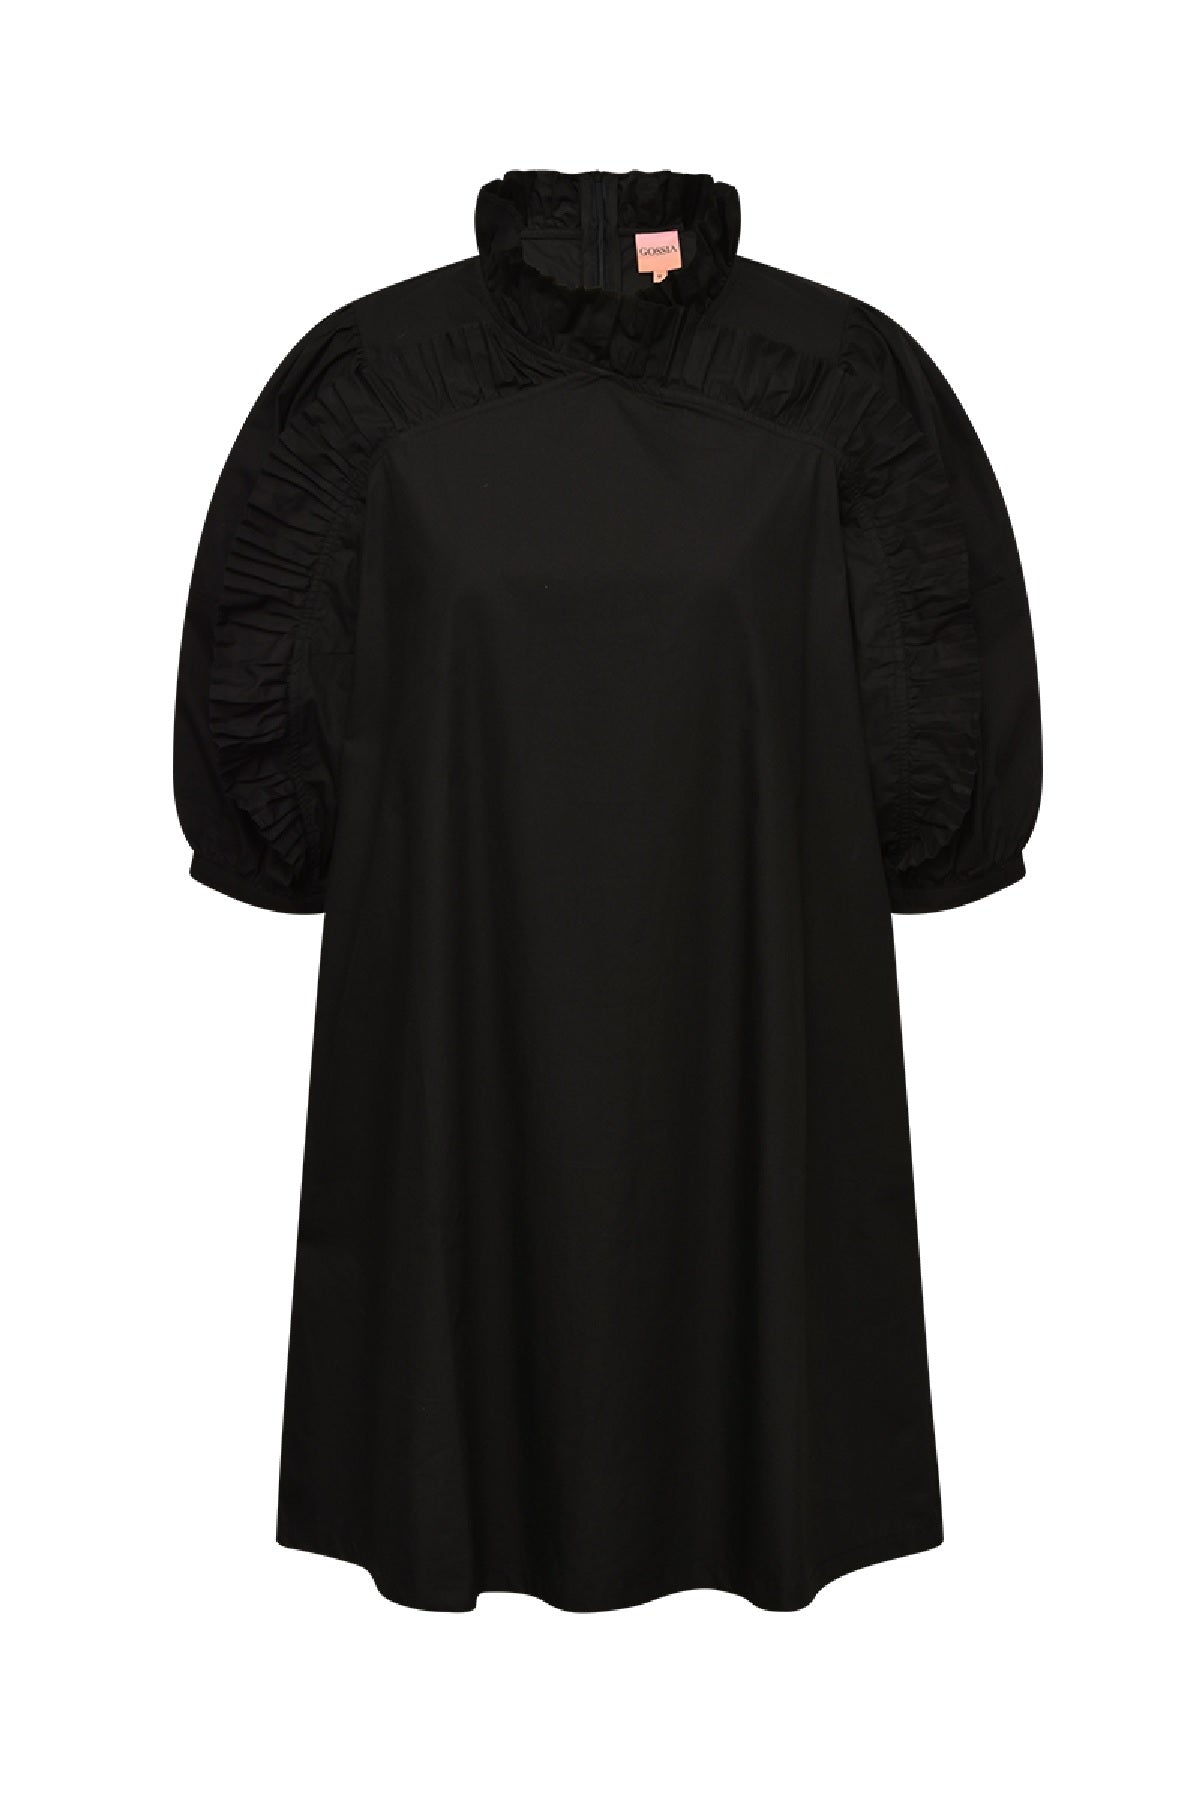 Gossia MillieGO Dress, Black